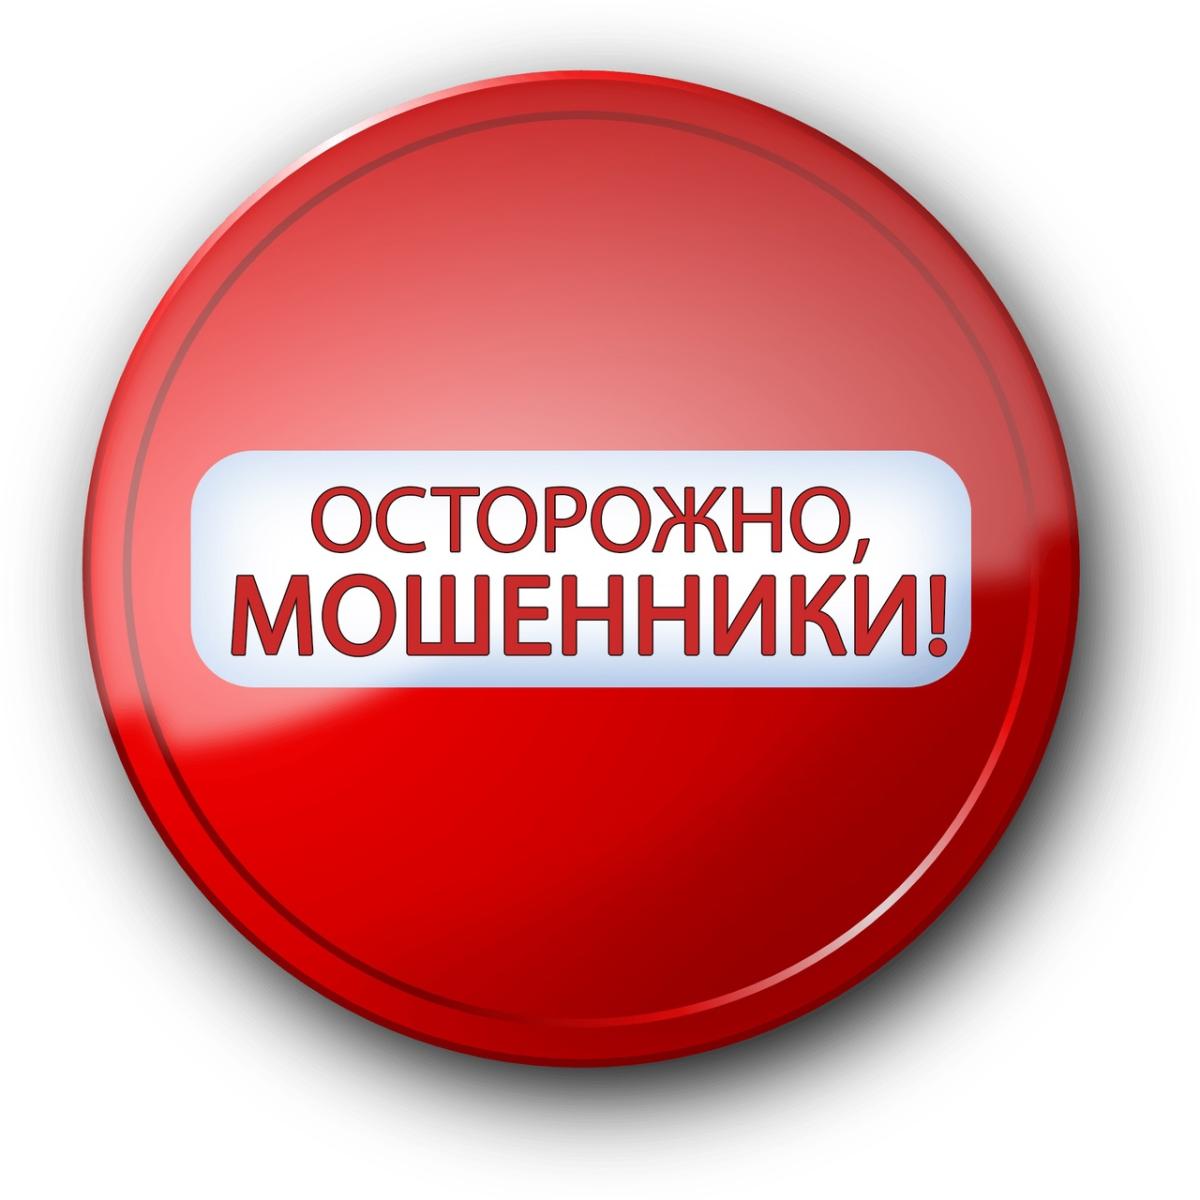 Жительница Мордовии отдала неизвестным более 1 миллиона рублей